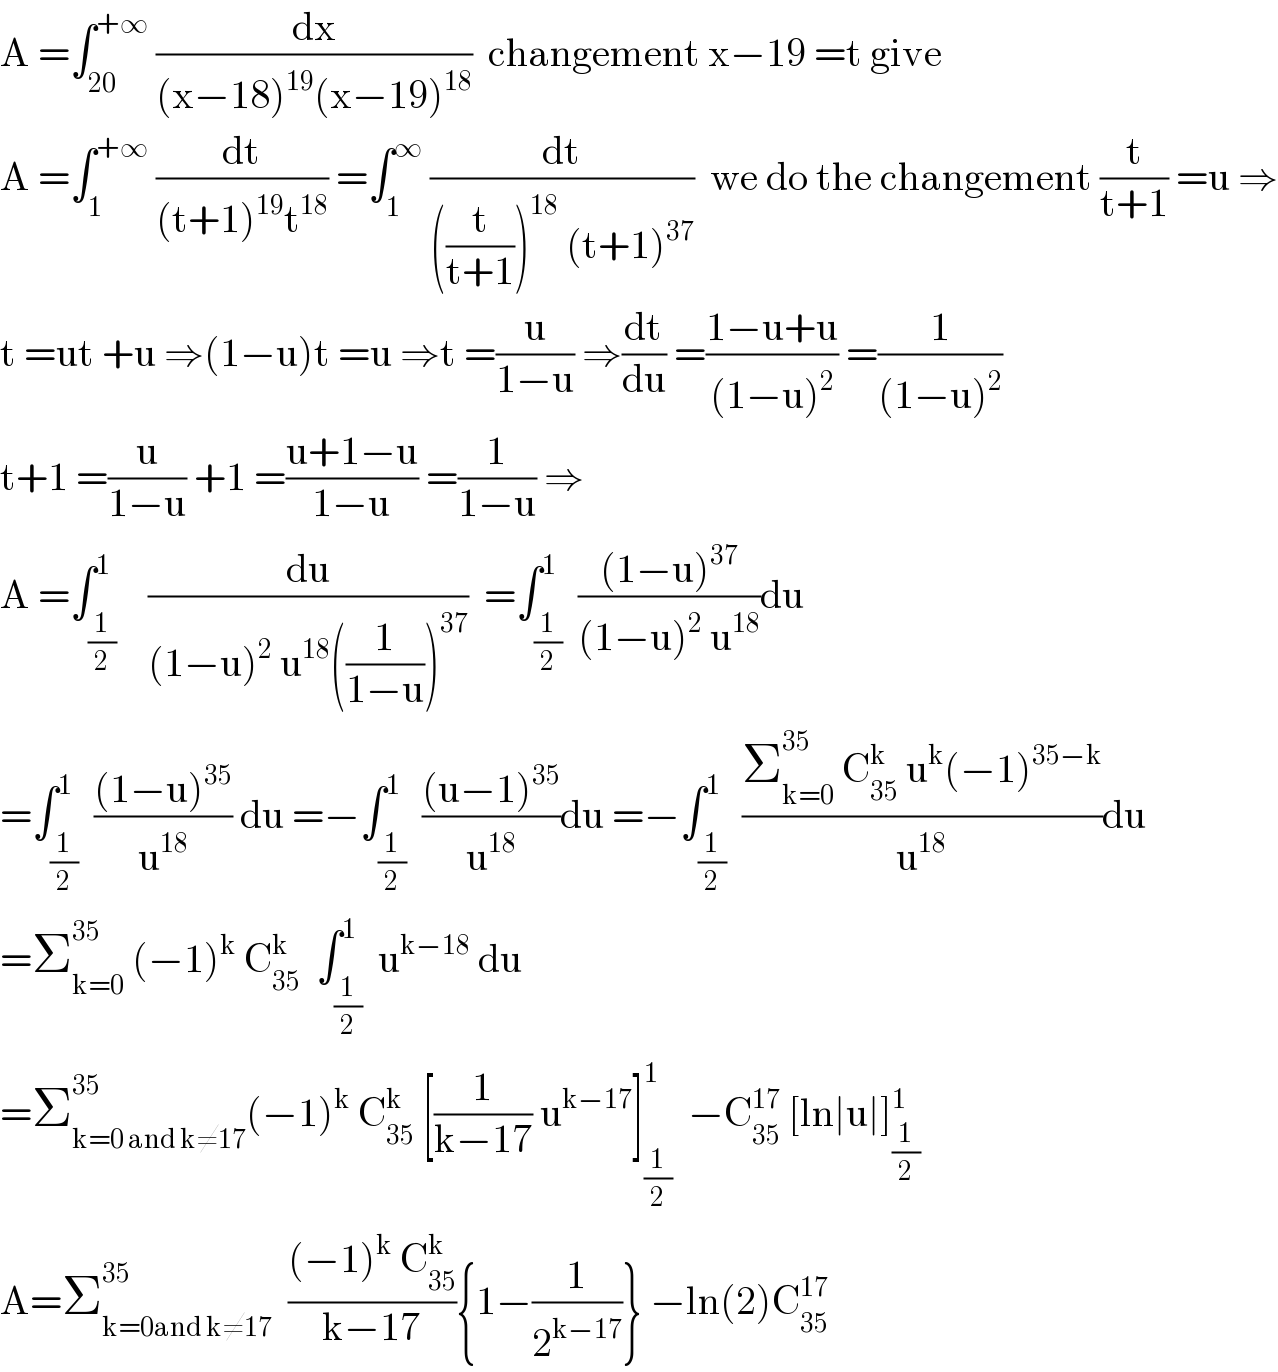 A =∫_(20) ^(+∞)  (dx/((x−18)^(19) (x−19)^(18) ))  changement x−19 =t give  A =∫_1 ^(+∞)  (dt/((t+1)^(19) t^(18) )) =∫_1 ^∞  (dt/(((t/(t+1)))^(18)  (t+1)^(37) ))  we do the changement (t/(t+1)) =u ⇒  t =ut +u ⇒(1−u)t =u ⇒t =(u/(1−u)) ⇒(dt/du) =((1−u+u)/((1−u)^2 )) =(1/((1−u)^2 ))  t+1 =(u/(1−u)) +1 =((u+1−u)/(1−u)) =(1/(1−u)) ⇒  A =∫_(1/2) ^1    (du/((1−u)^2  u^(18) ((1/(1−u)))^(37) ))  =∫_(1/2) ^1  (((1−u)^(37) )/((1−u)^2  u^(18) ))du   =∫_(1/2) ^1  (((1−u)^(35) )/u^(18) ) du =−∫_(1/2) ^1  (((u−1)^(35) )/u^(18) )du =−∫_(1/2) ^1  ((Σ_(k=0) ^(35 )  C_(35) ^k  u^k (−1)^(35−k) )/u^(18) )du  =Σ_(k=0) ^(35 )  (−1)^k  C_(35) ^k   ∫_(1/2) ^1  u^(k−18)  du  =Σ_(k=0 and k≠17) ^(35) (−1)^k  C_(35) ^k  [(1/(k−17)) u^(k−17) ]_(1/2) ^1   −C_(35) ^(17)  [ln∣u∣]_(1/2) ^1   A=Σ_(k=0and k≠17) ^(35)   (((−1)^k  C_(35) ^k )/(k−17)){1−(1/2^(k−17) )} −ln(2)C_(35) ^(17)   